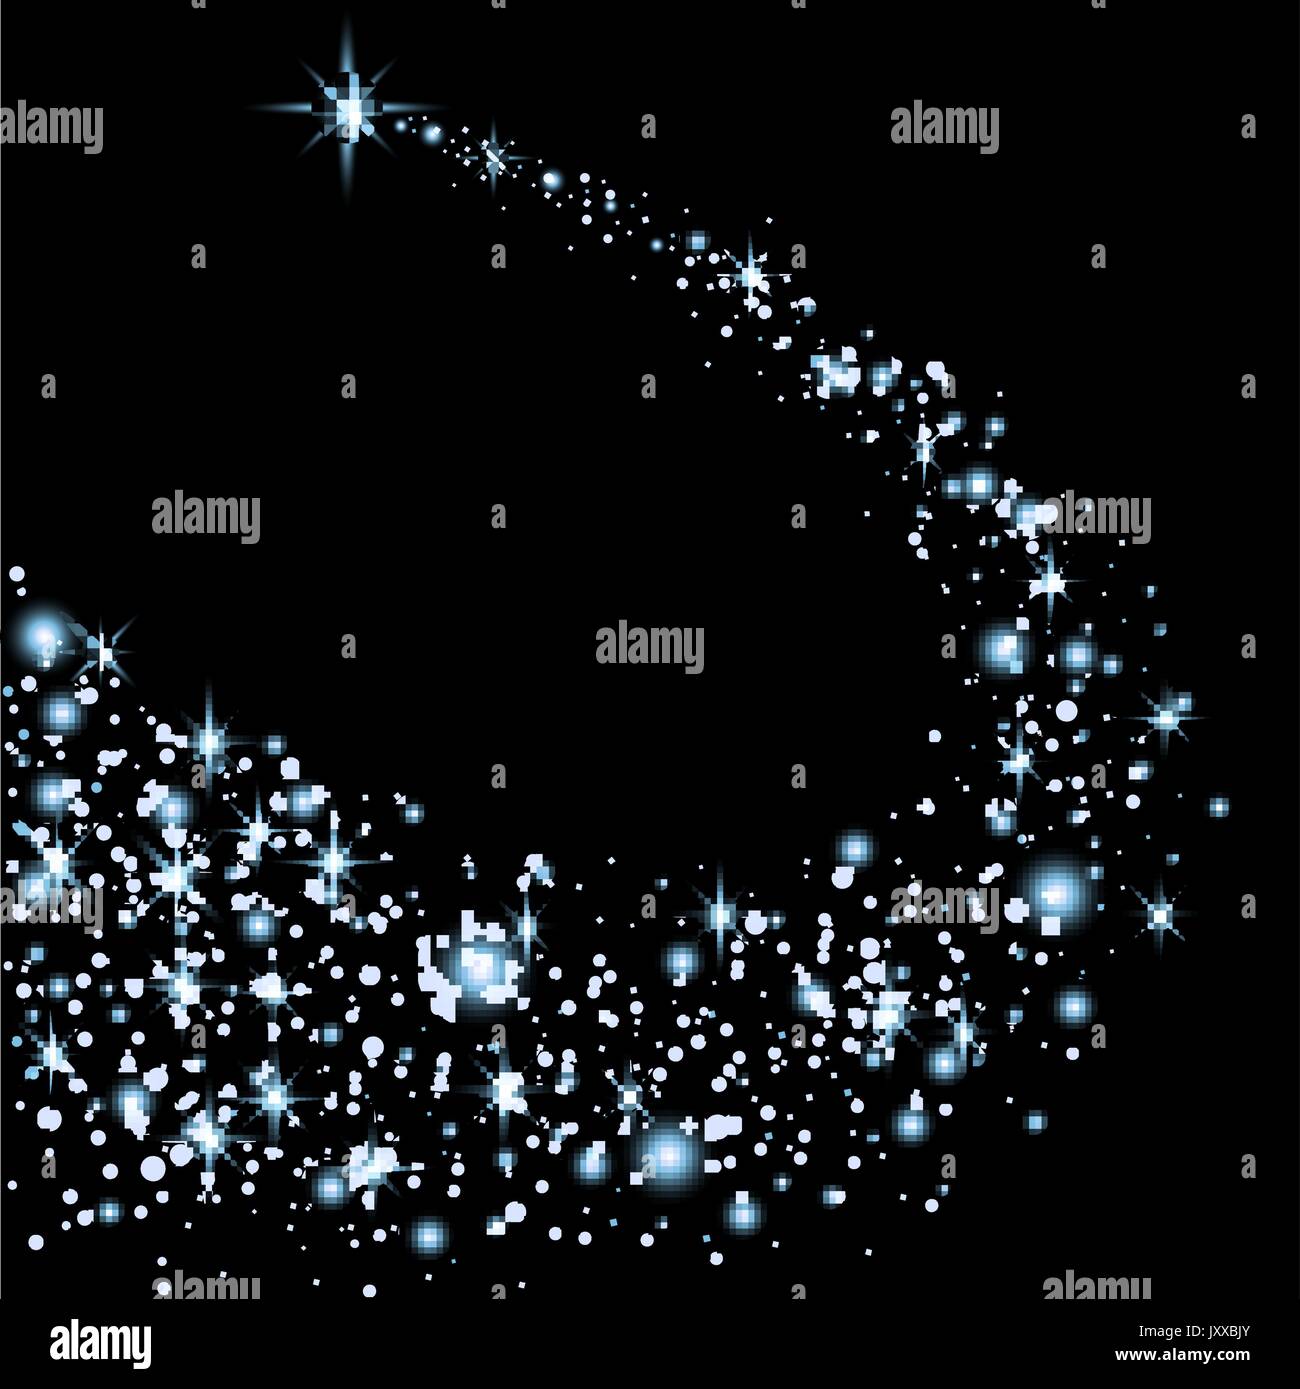 Abstract luminose stelle cadenti - stella di Natale - Shooting Star con  stelle scintillanti Trail su sfondo blu scuro - Meteoroid, Comet, asteroide  - Backdro Immagine e Vettoriale - Alamy